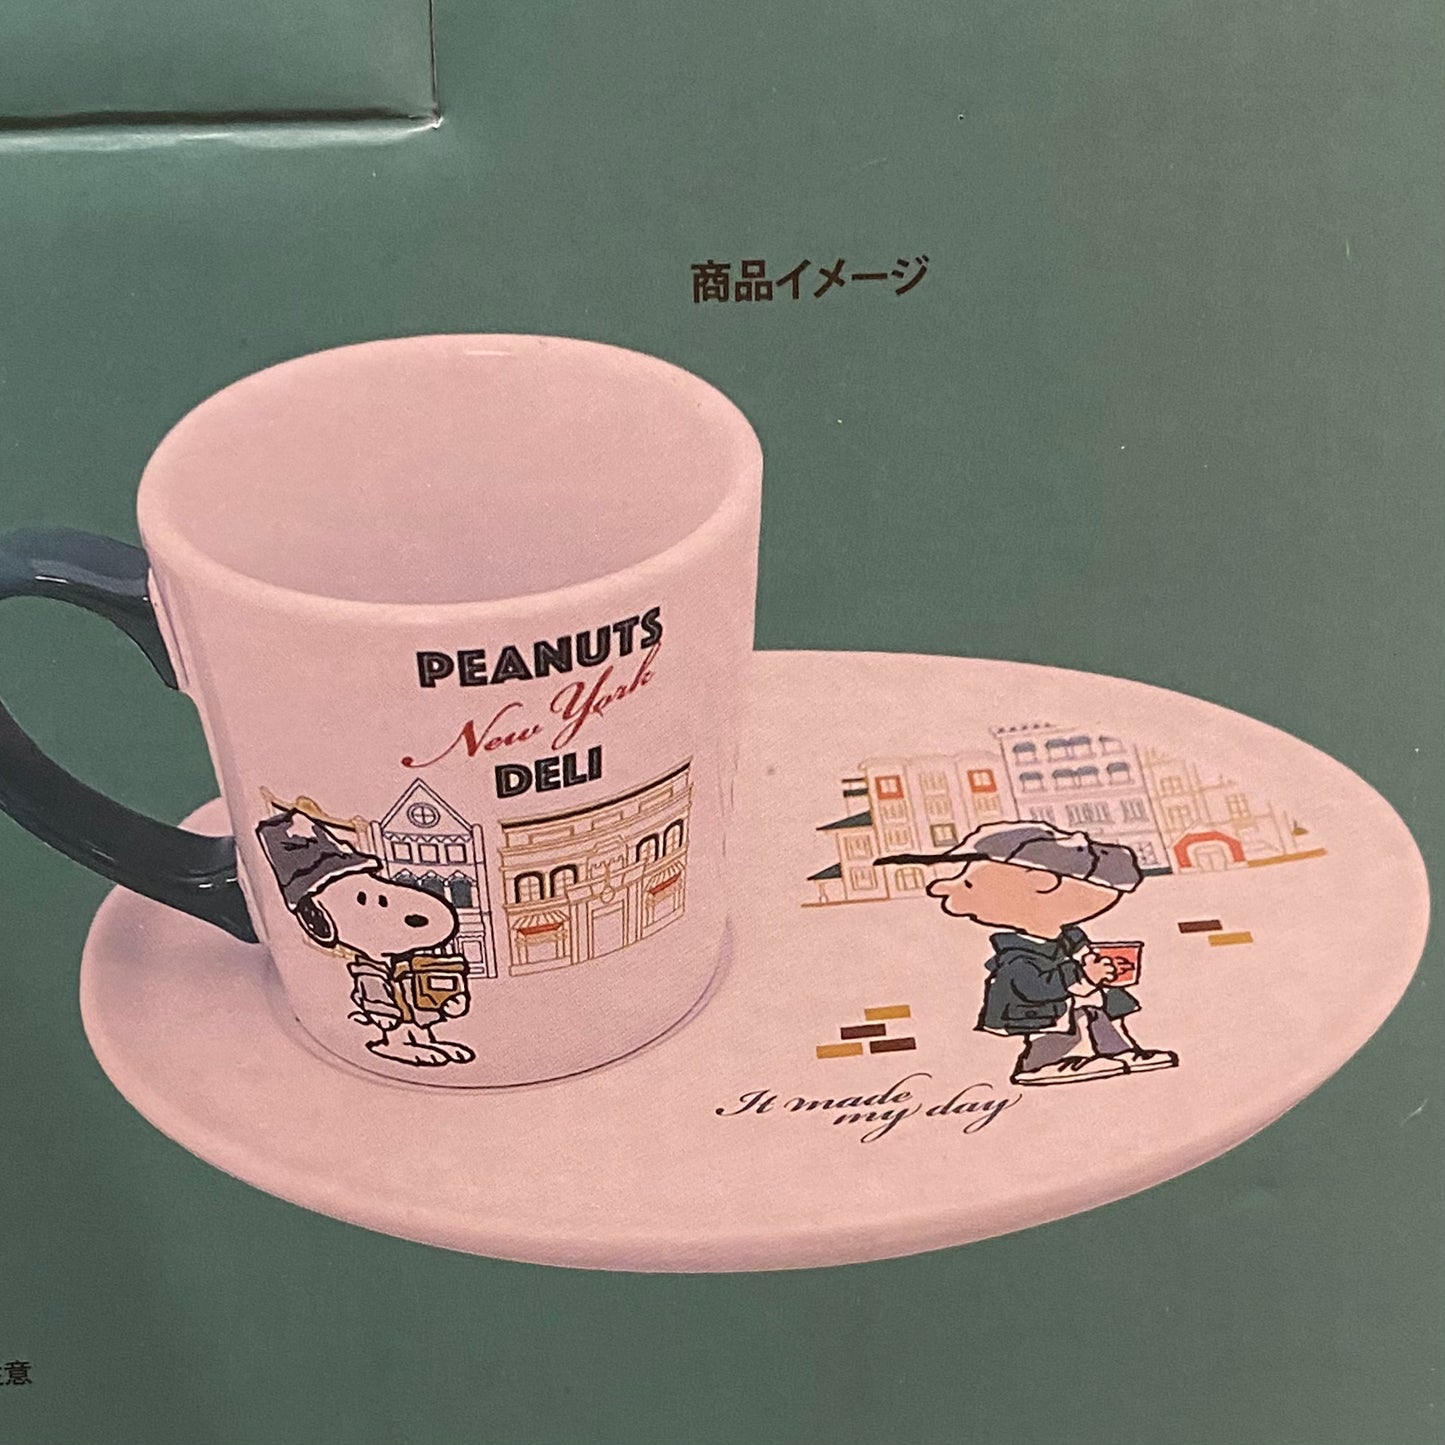 【訂貨】USJ Peanuts New York Deli 食具